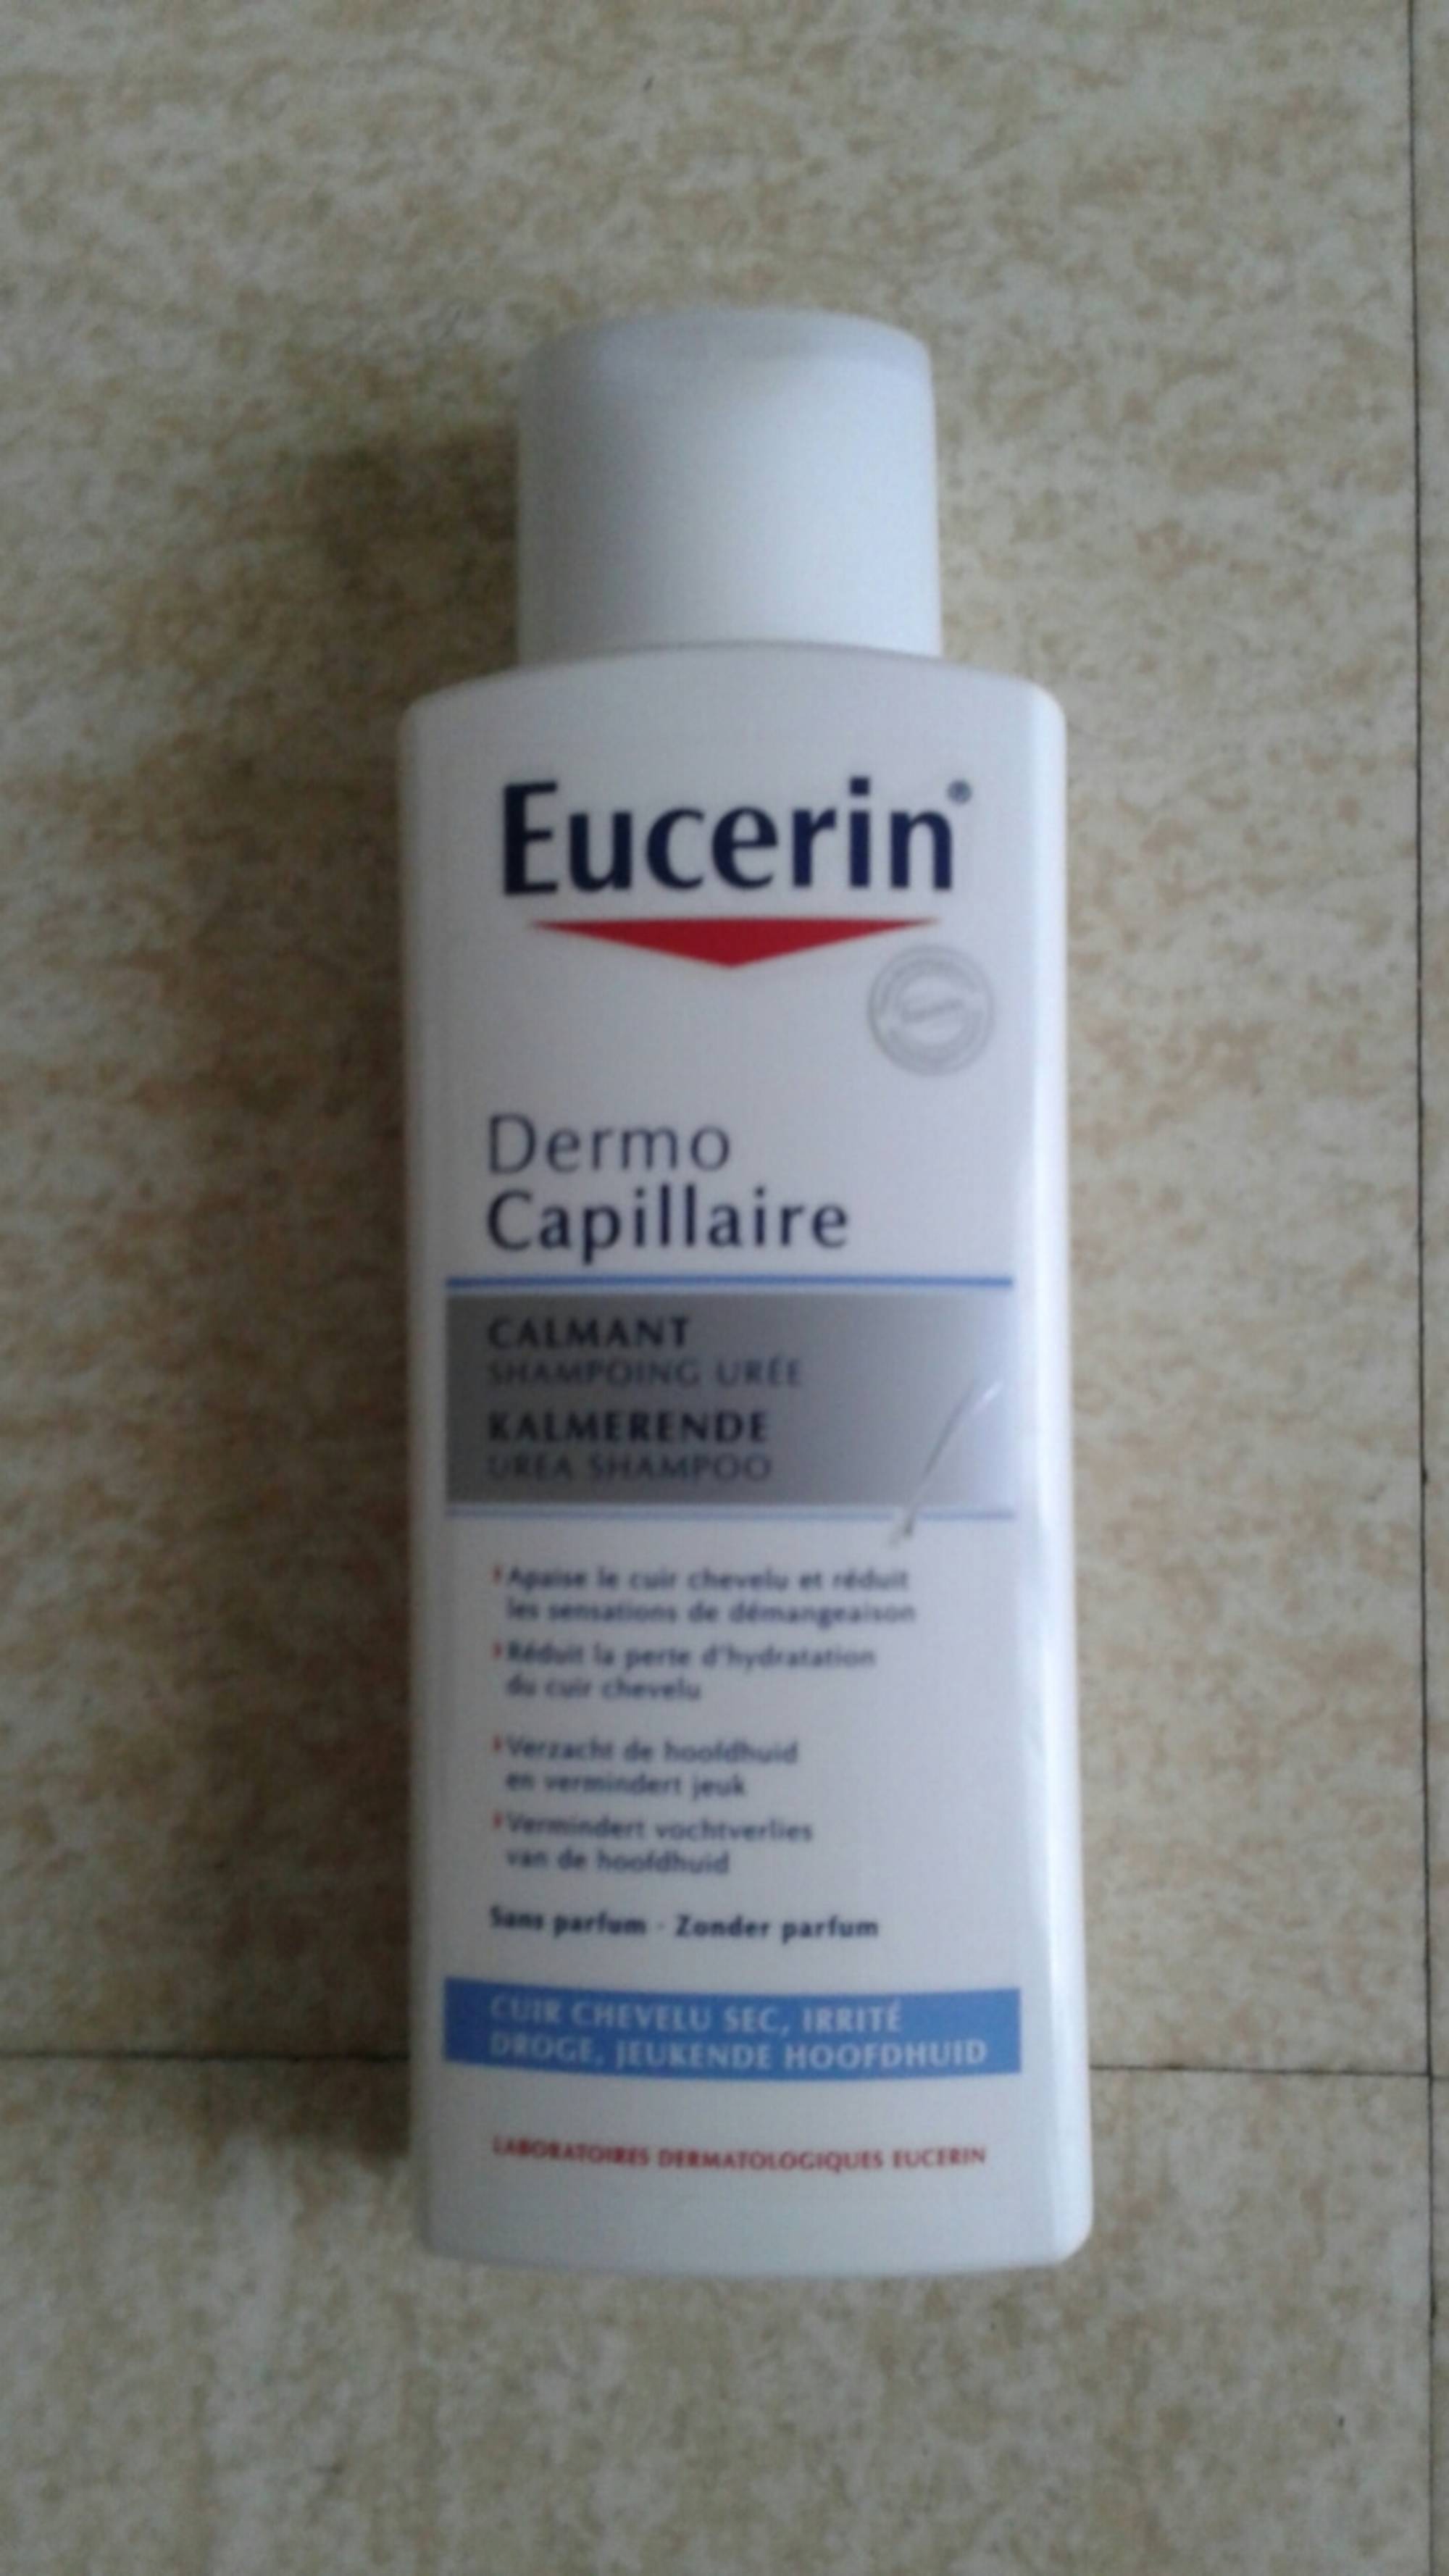 EUCERIN - Dermo capillaire - Calmant shampooing urée